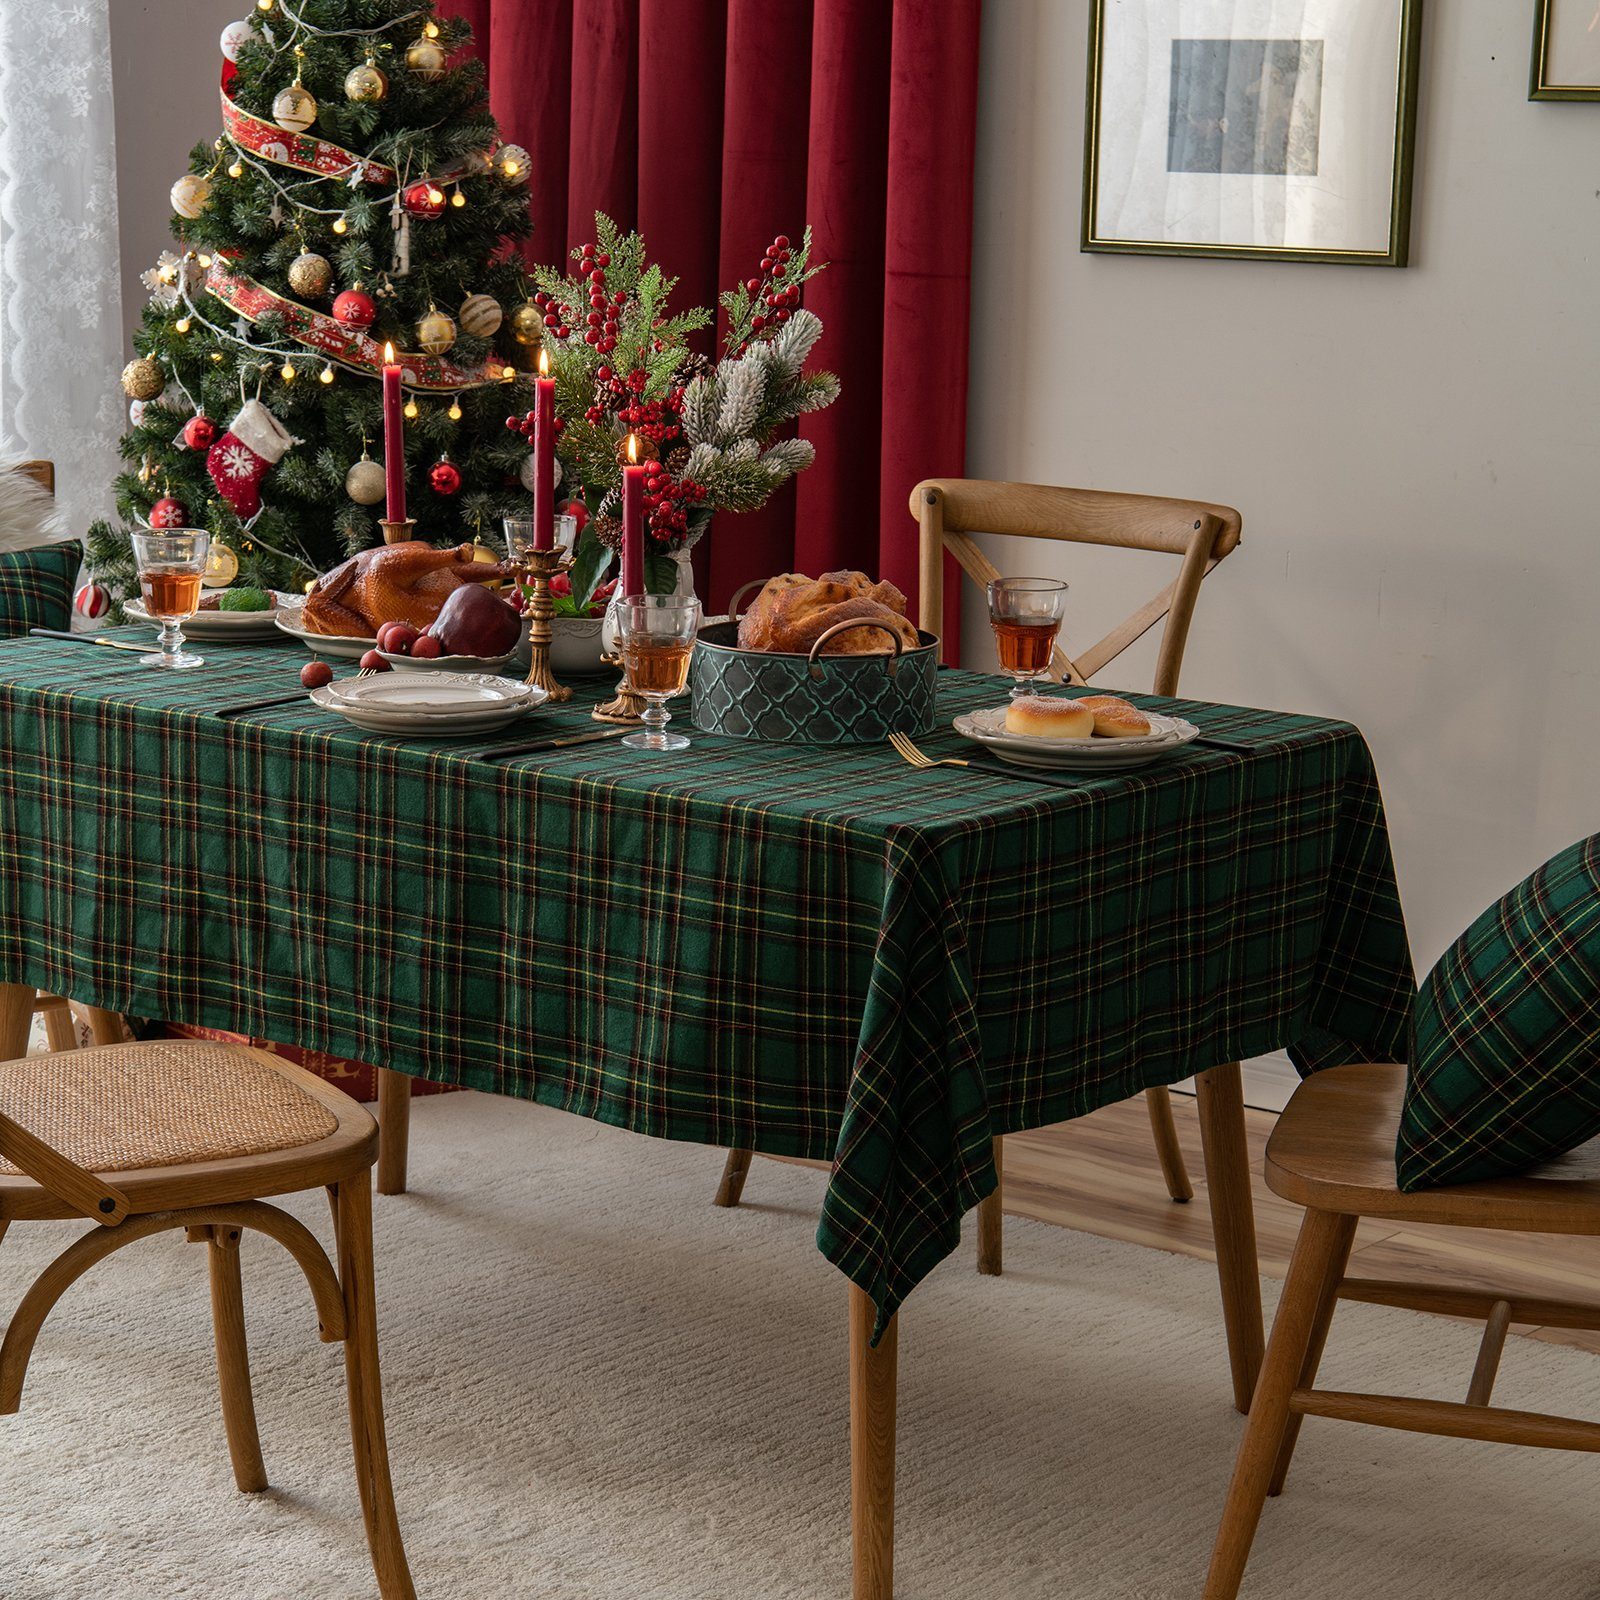 Grün Partydekoration Tischdecke Tischläufer Karierte Tischdecke Qelus Weihnachten